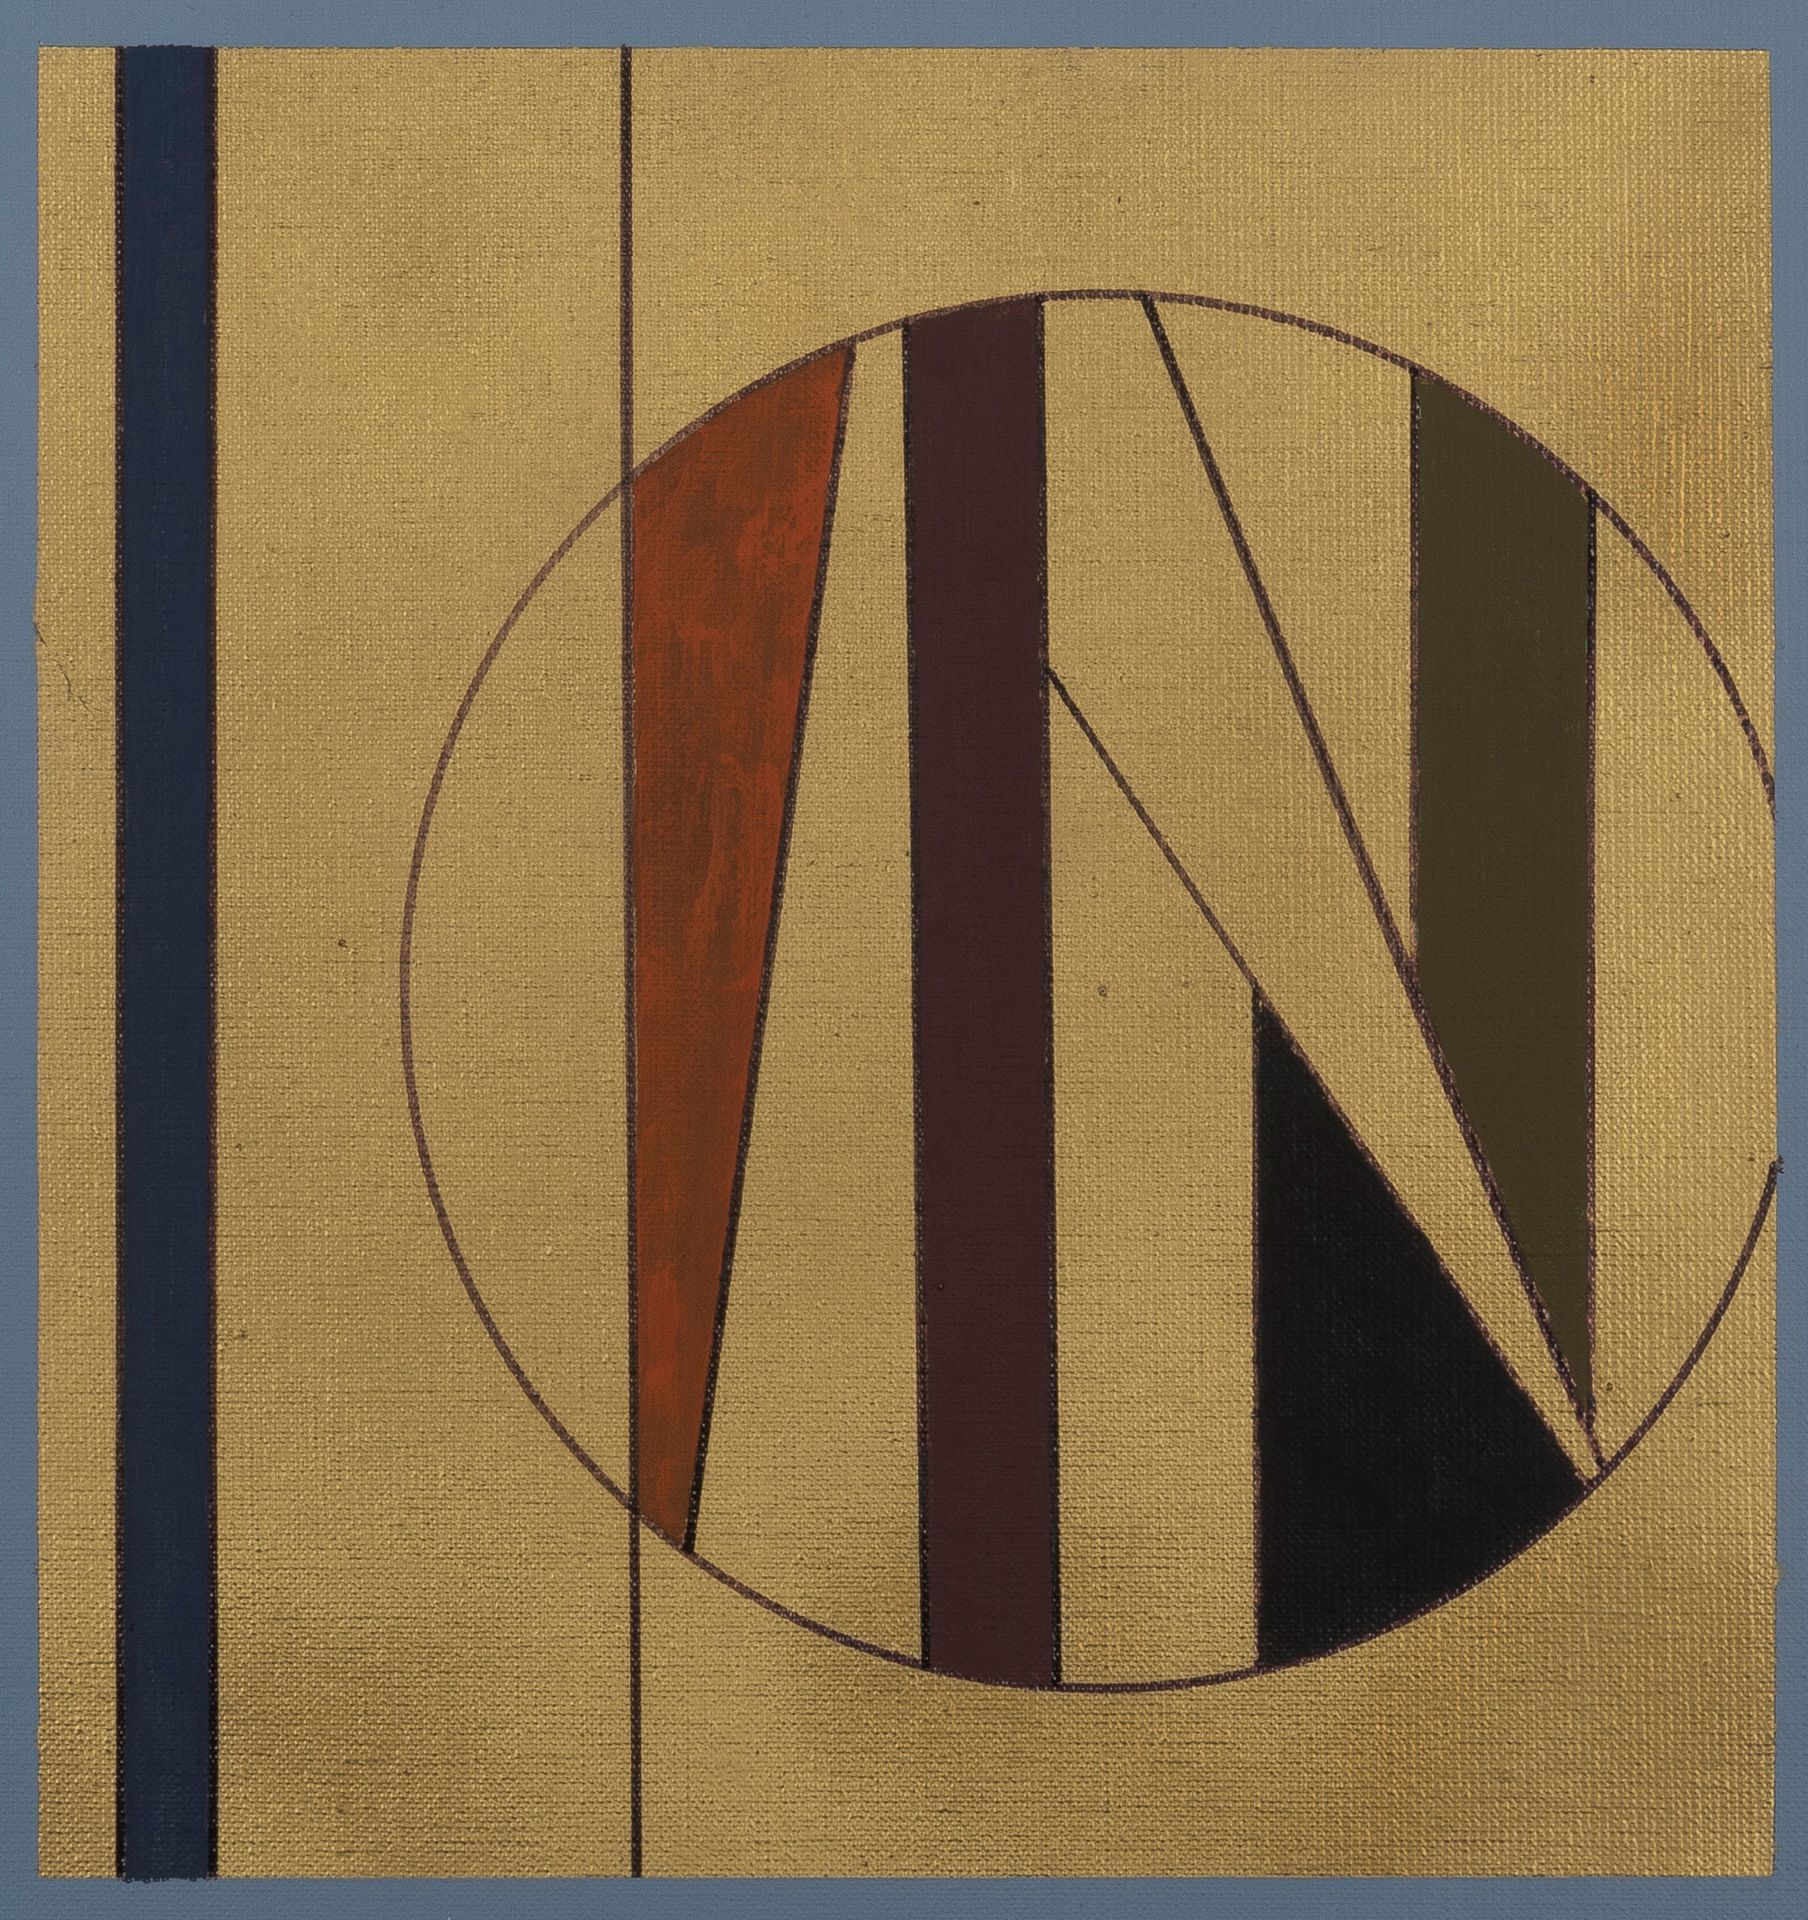 GUY VANDENBRANDEN (1926-2014) Composizione astratta, 2001
Olio su tela.
Firmato &hellip;